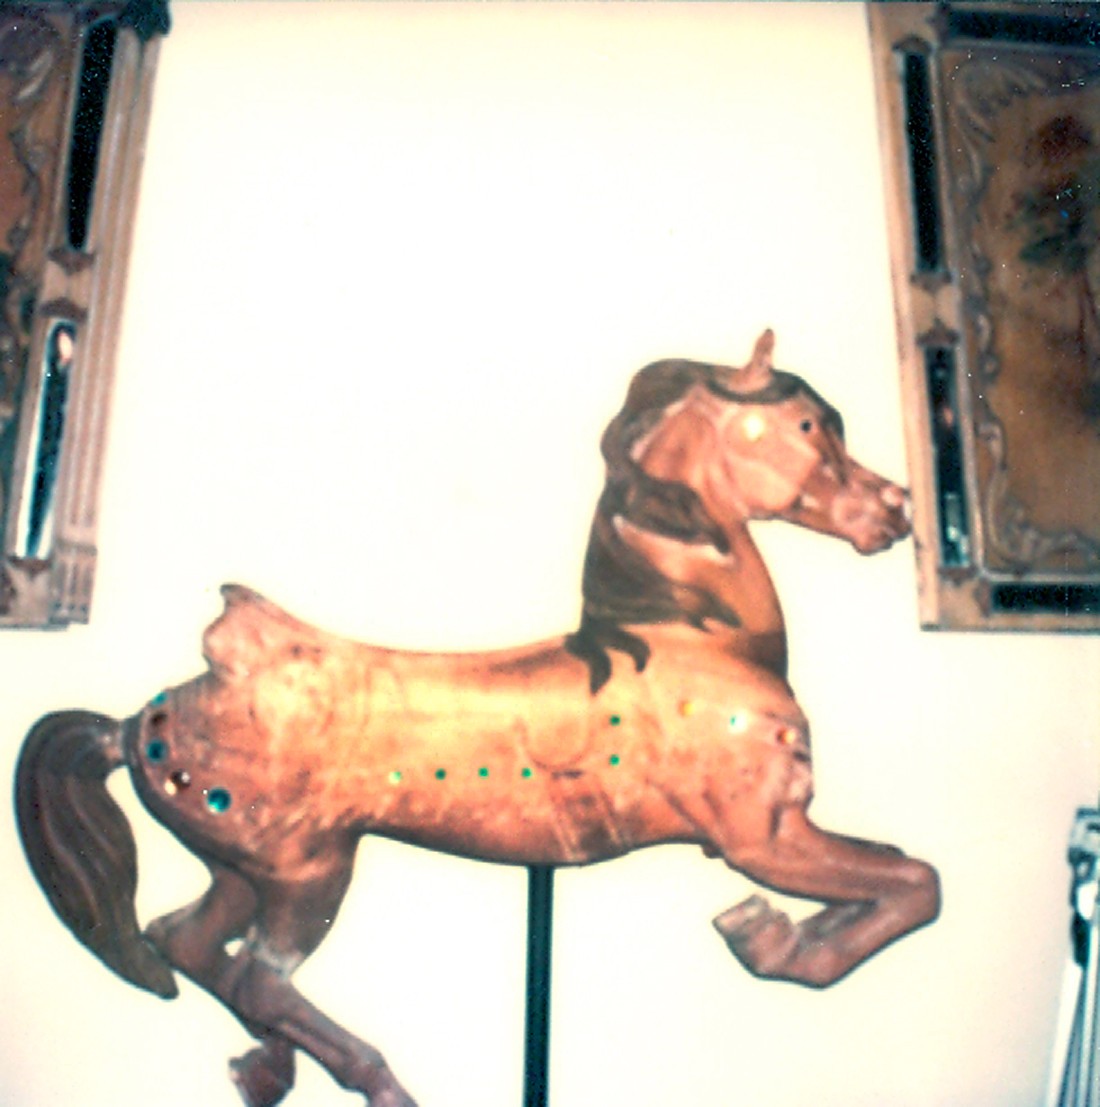 Fraley-Redbug-Studio-Looff-carousel-horse-restoration-1980-visit_013